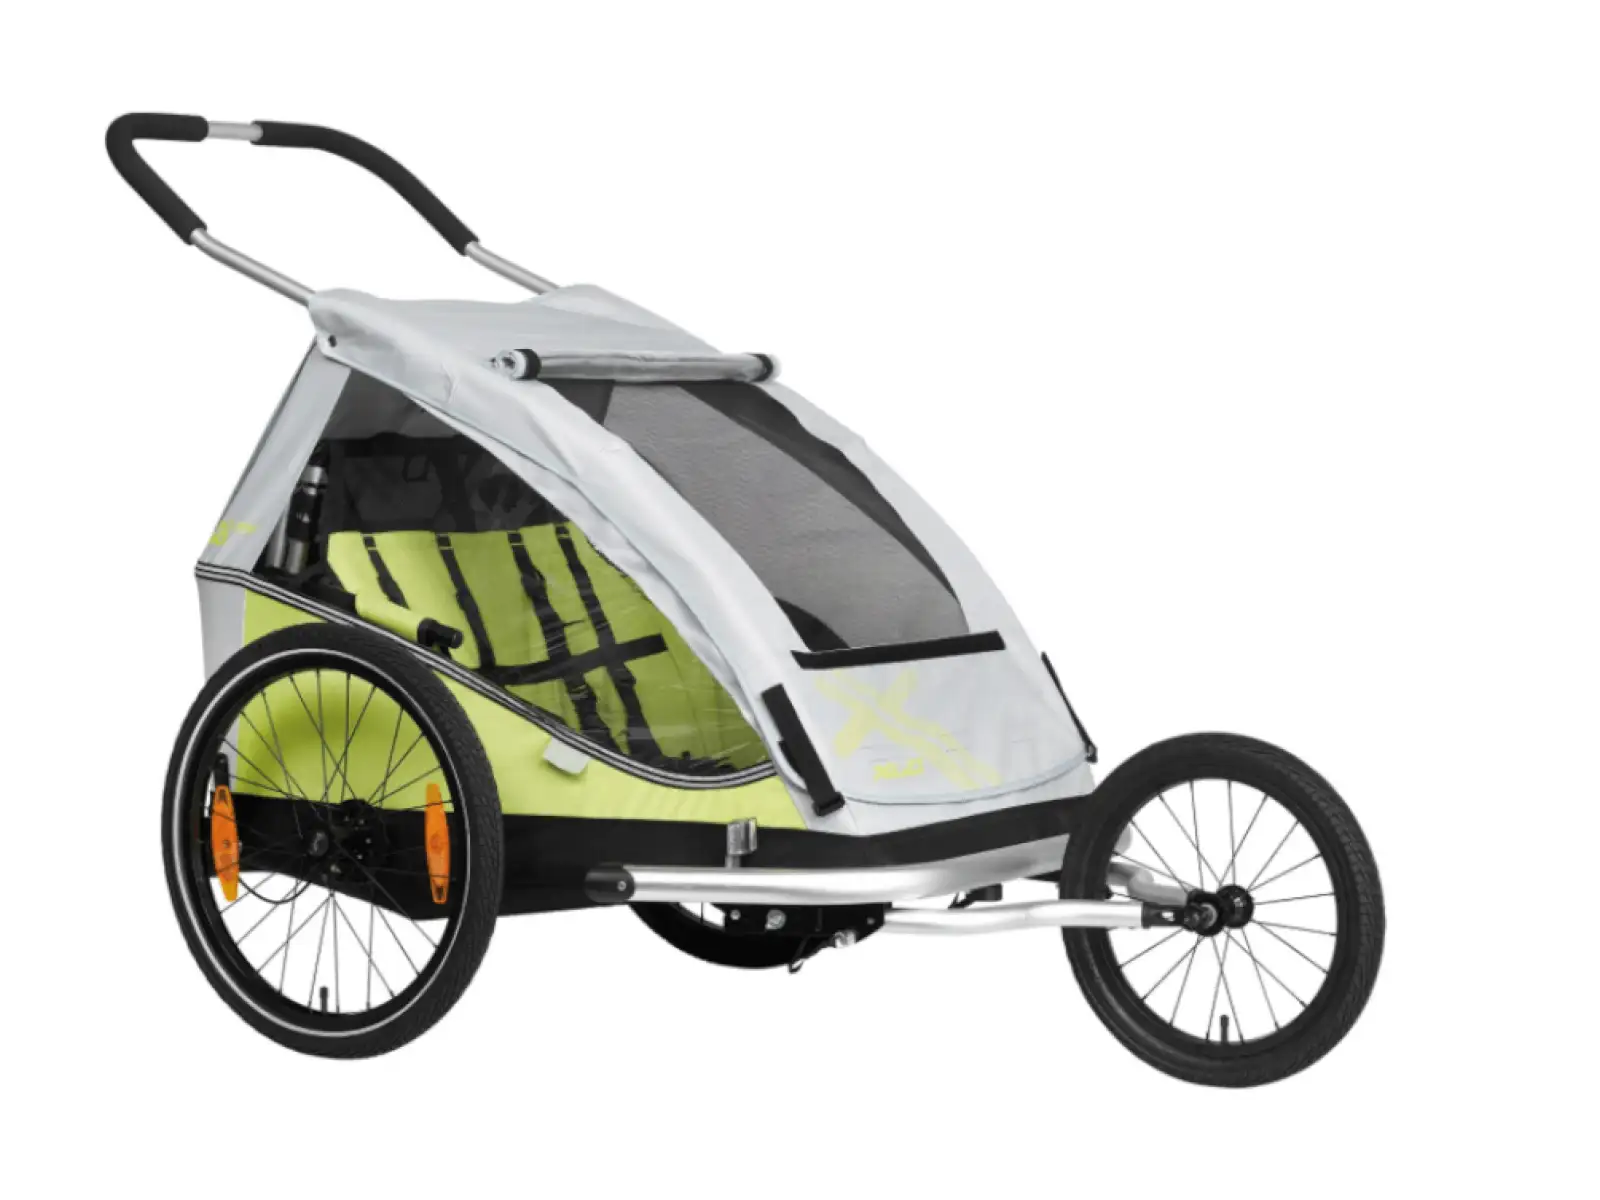 XLC dětský dvou-místný vozík za kolo Duo8teen žlutá